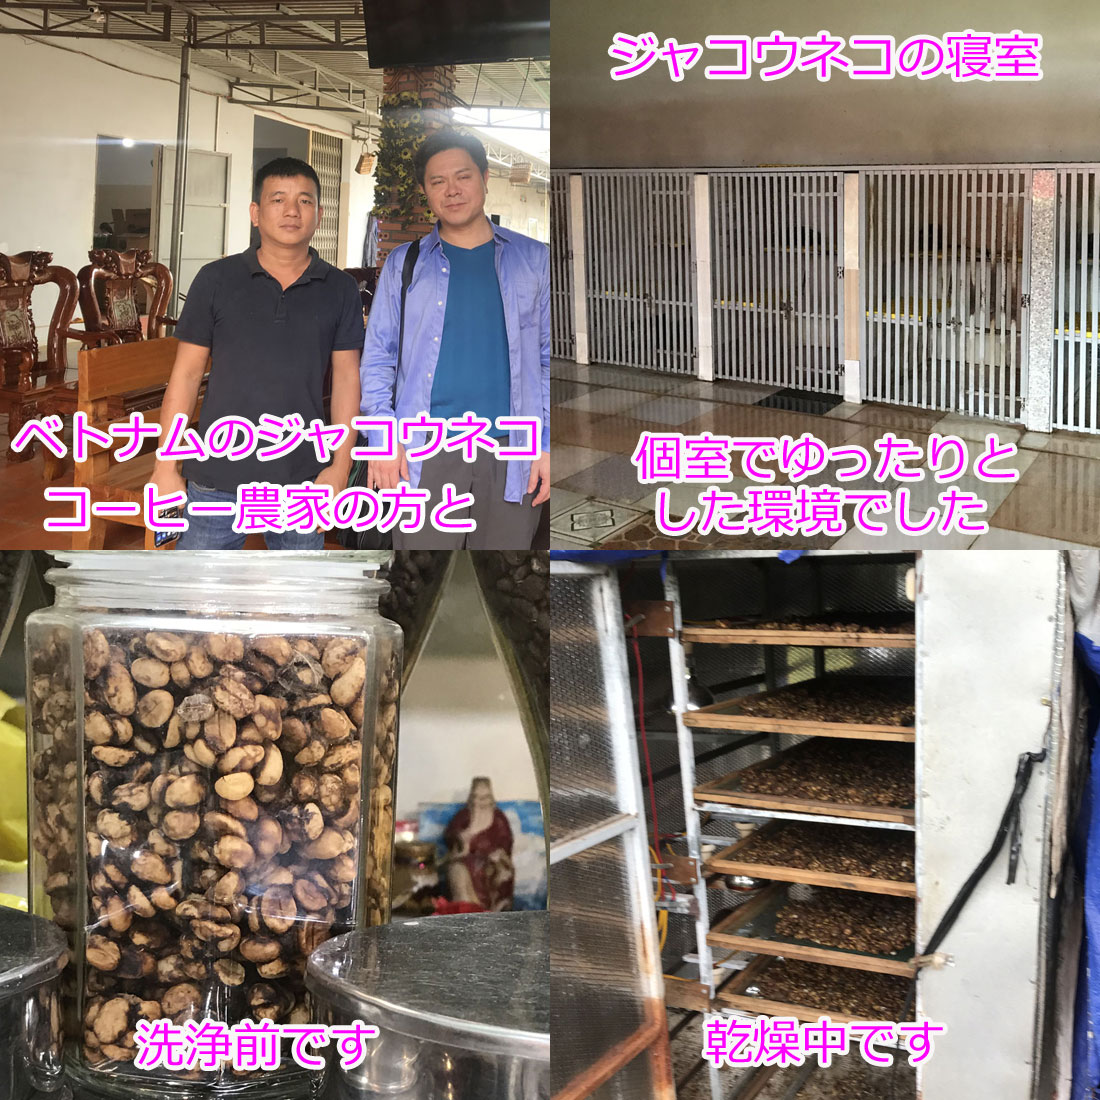 コーヒー 世界最高級 高級 kopi luwak コピ・ルアク コピ・ルアック コピルアク コピルアック ジャコウネコ じゃこうねこ ジャコウネココーヒー シベットコーヒー ウィーゼルコーヒー ベトナムコーヒー 焙煎豆 豆